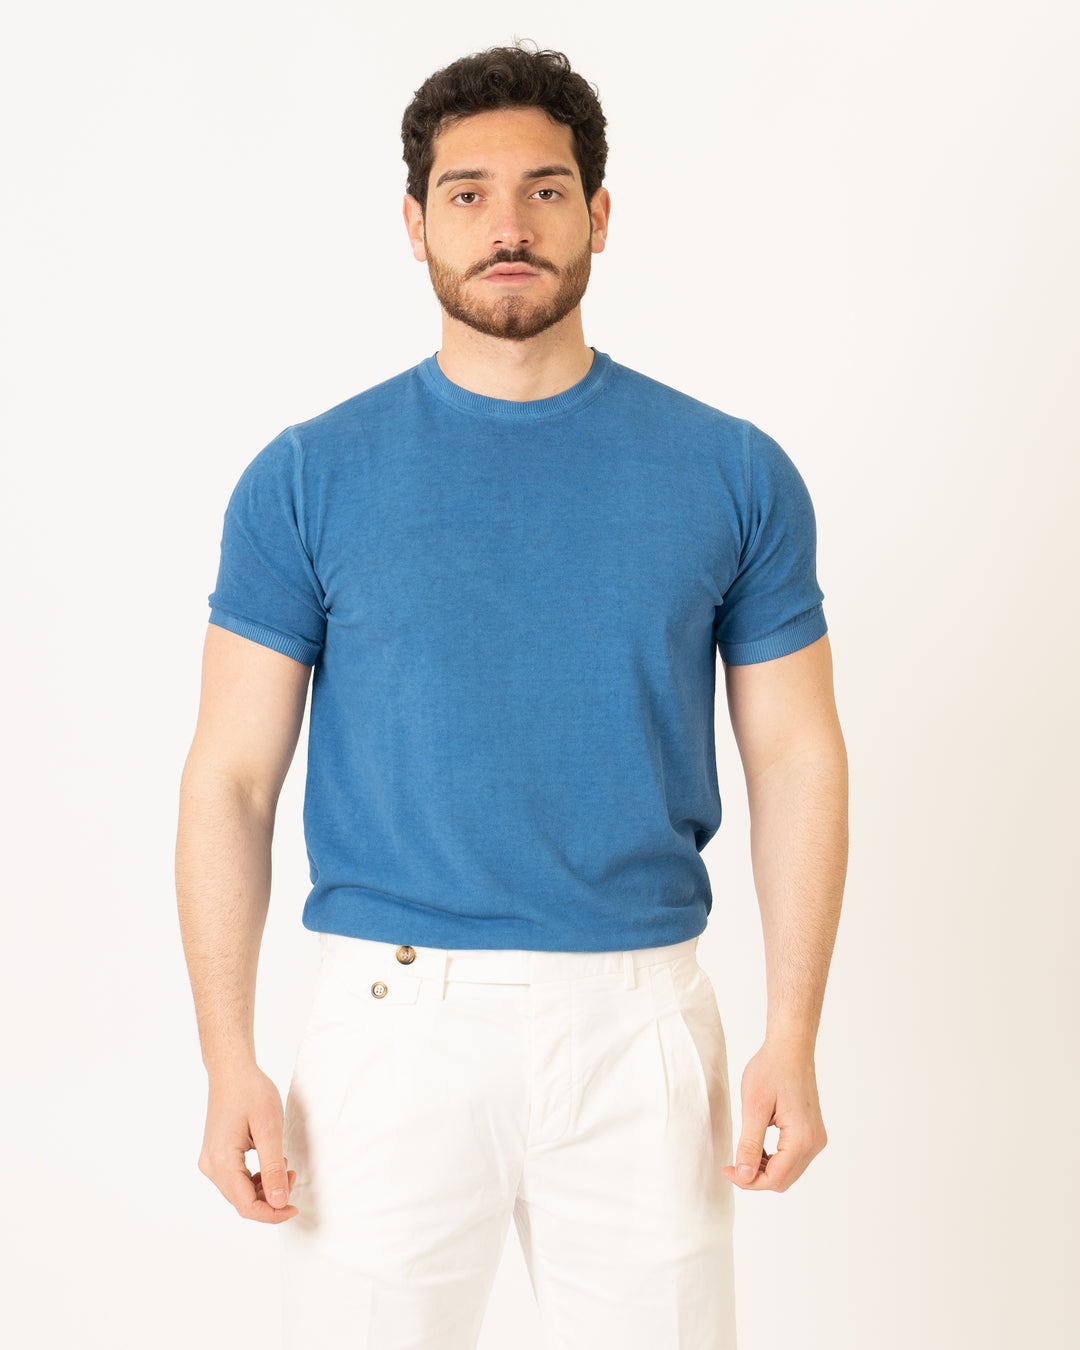 Bluette Jersey T-Shirt